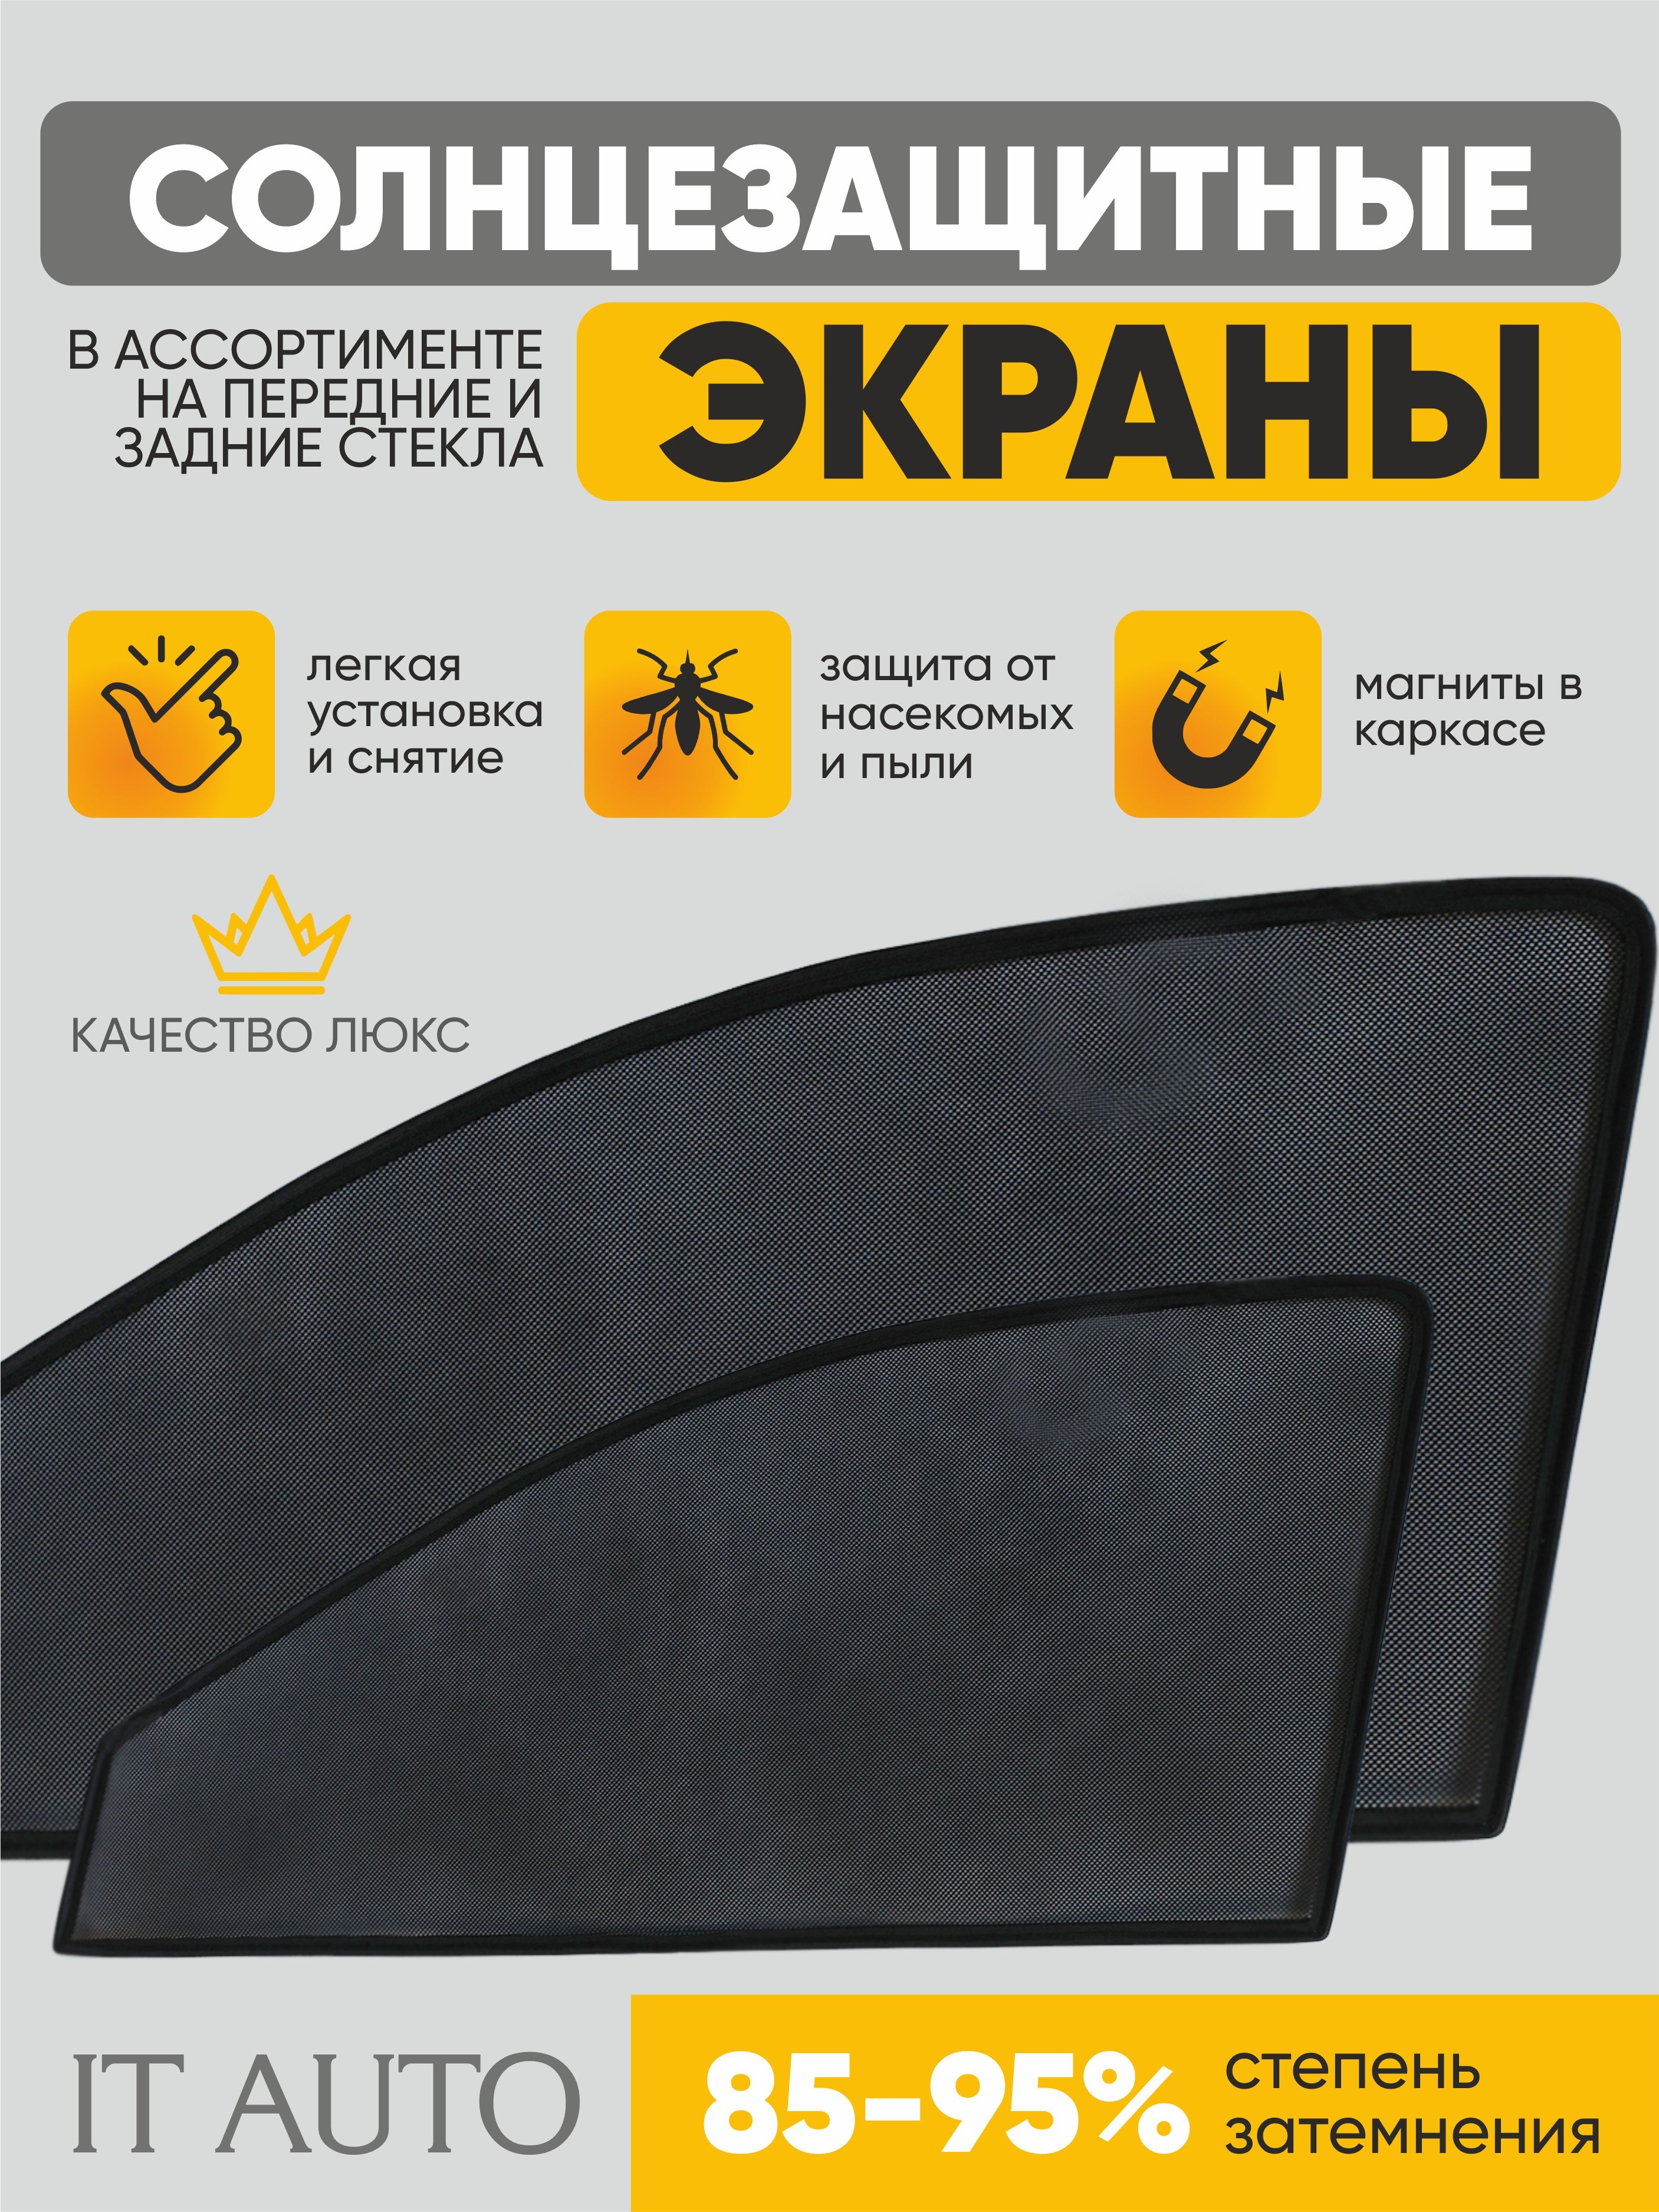 Установка лобового стекла в СПб, замена ветрового стекла по приемлемой цене ВАЗ